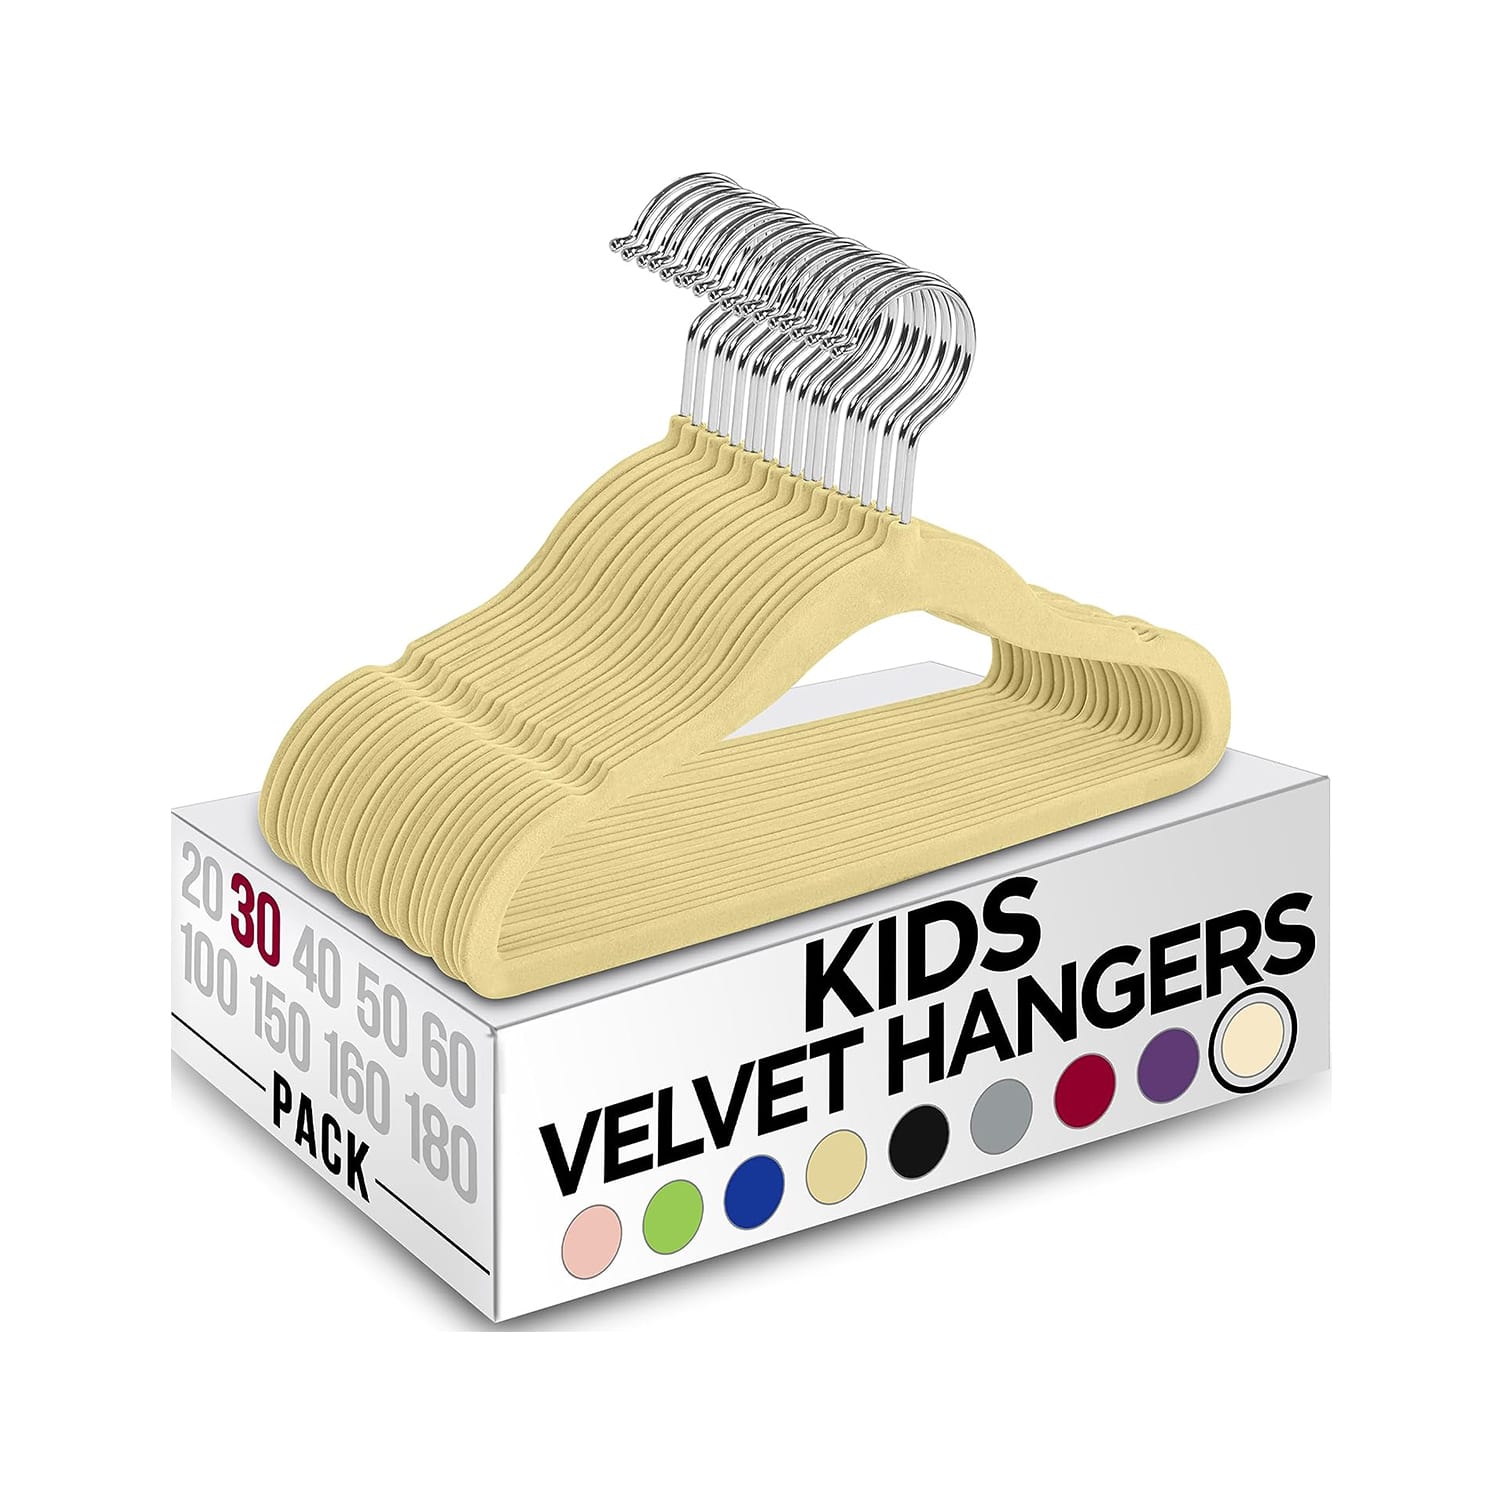 Big Kids Hangers - Only Kids Hangers